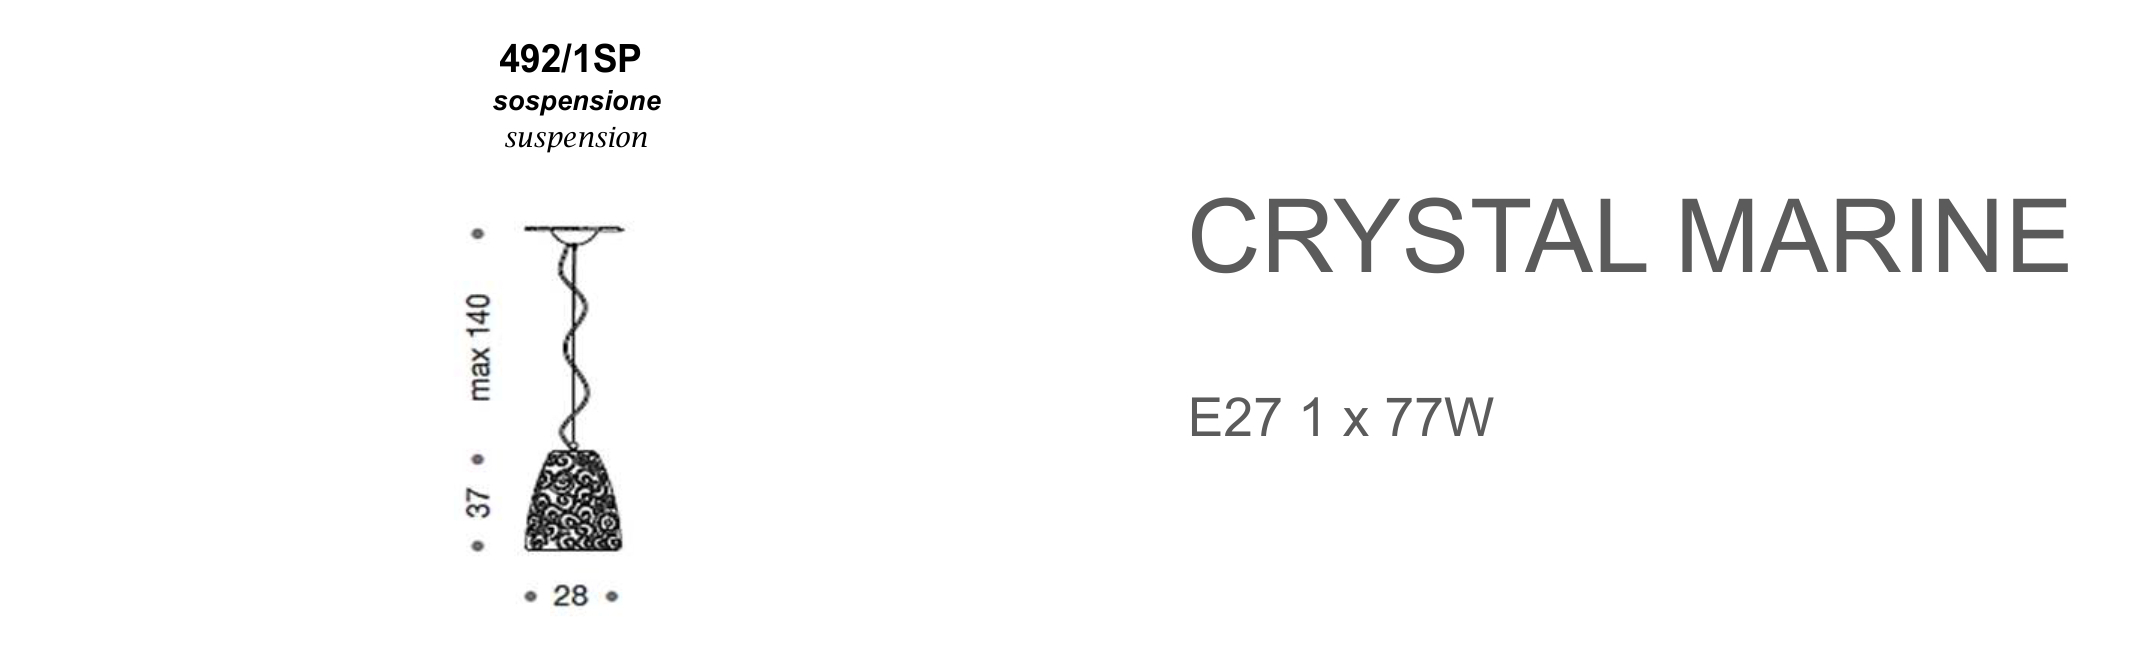 Crystal Marine 492/1SP